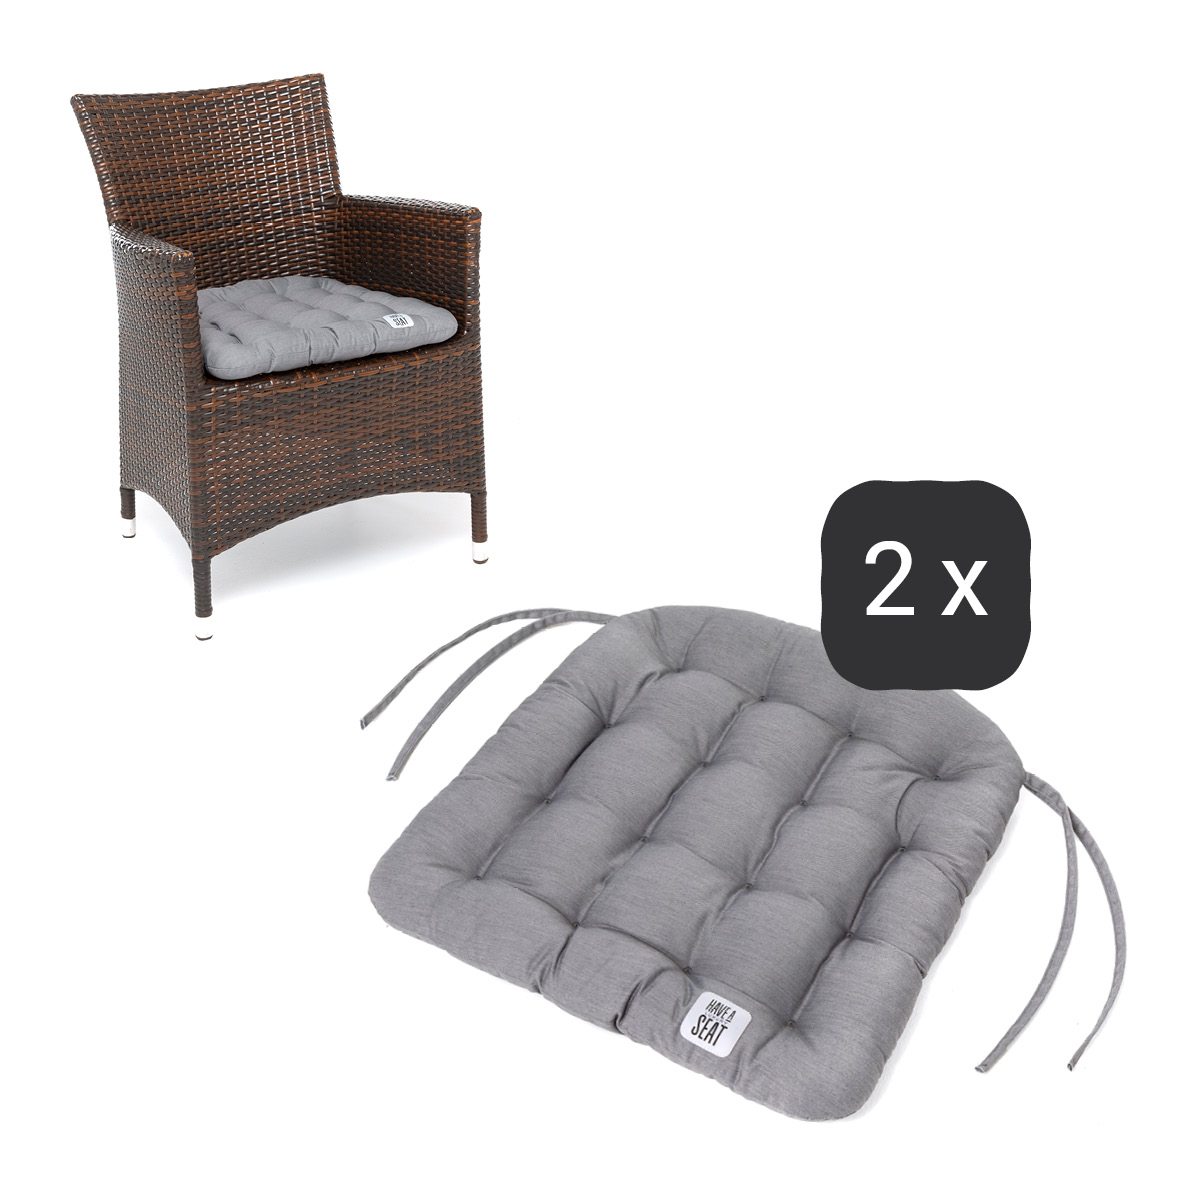 Sitzkissen für Rattanstühle 48x46 cm | Hellgrau | 2er Set | Premium-Sitzkomfort | Indoor / Outdoor | waschbar bis 95°C | HAVE A SEAT Living